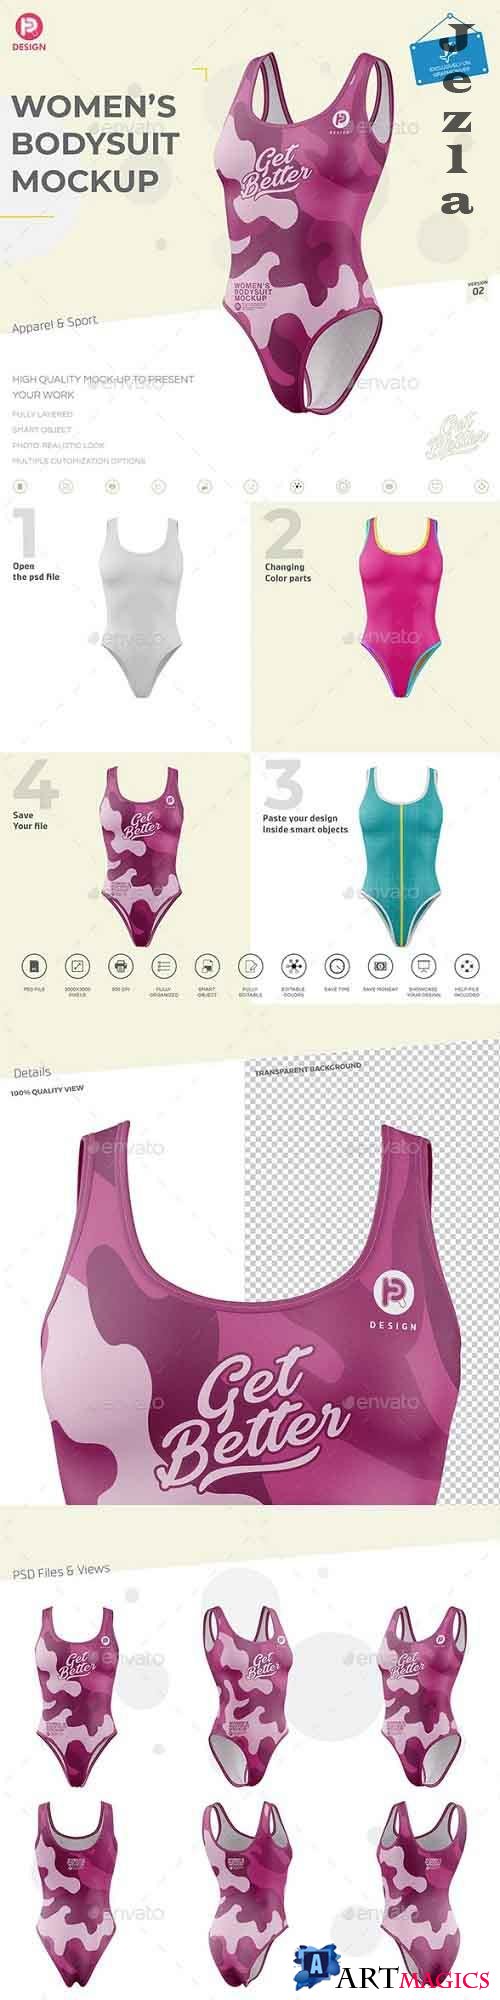 Women's Bodysuit Mockup V2 26697053